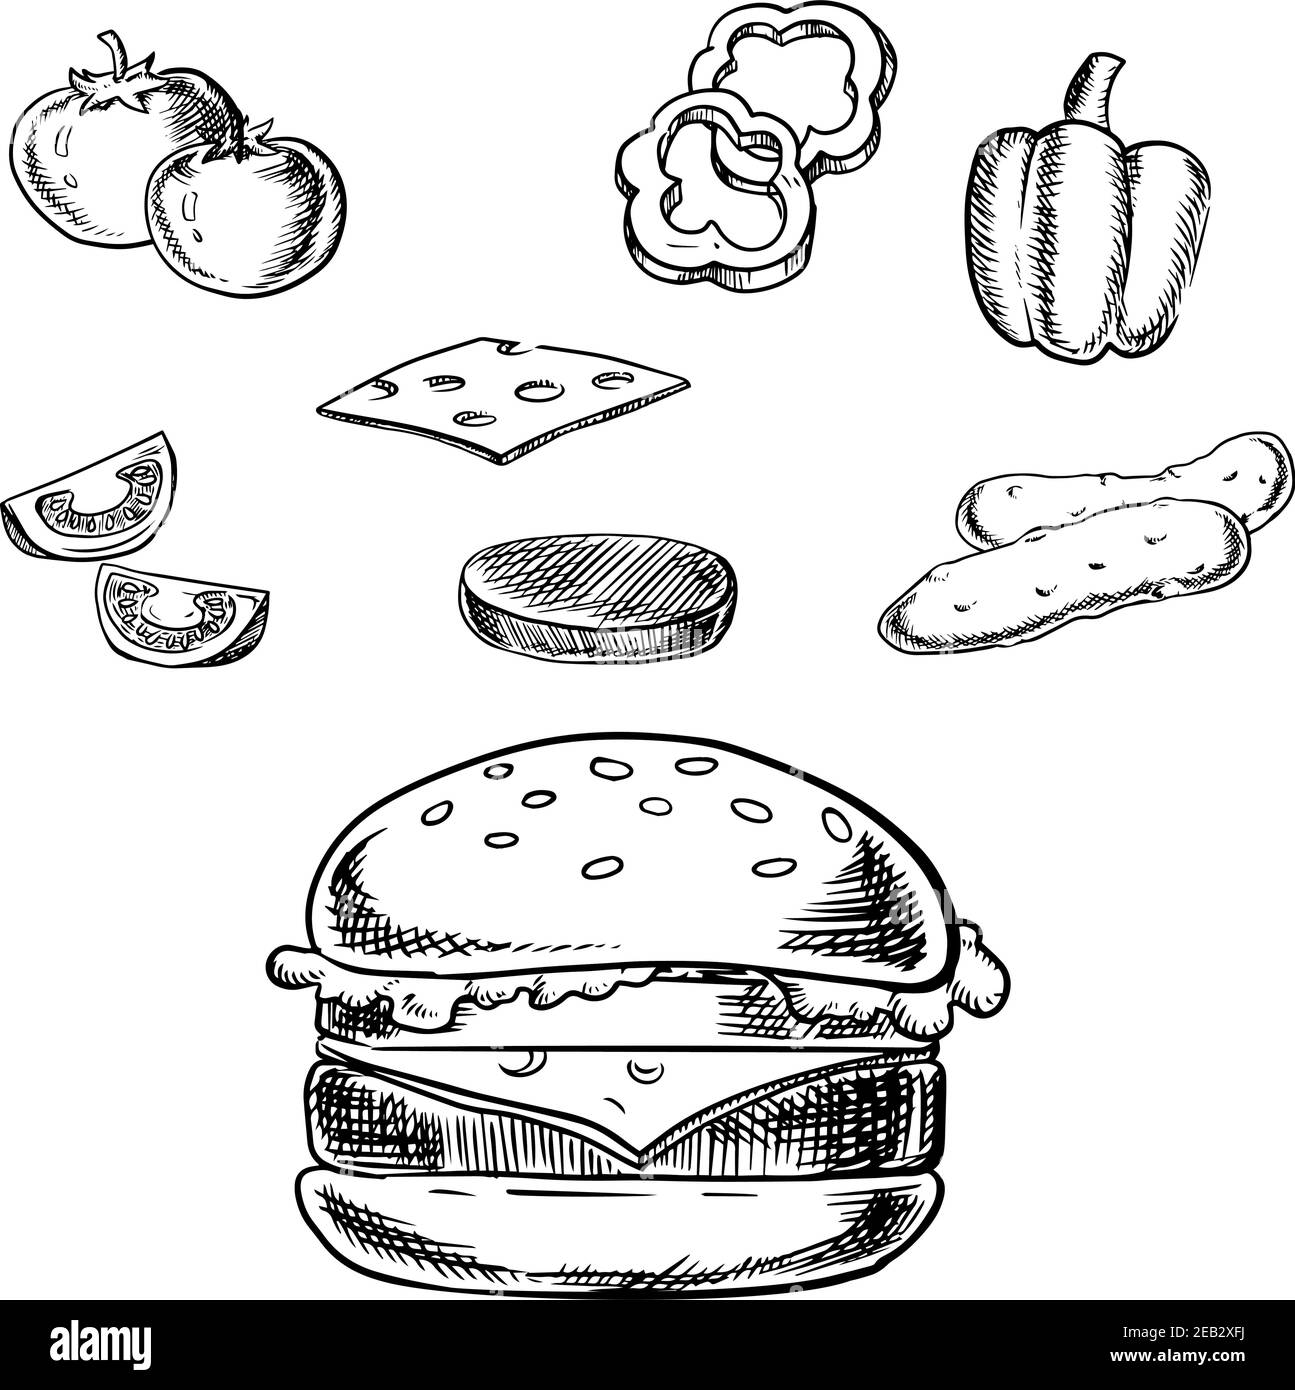 Cheeseburger-Skizze mit gegrilltem Patty, Käse, frischen Tomaten, Gurken, Paprika-Gemüse und Weizenbrötchen mit Sesam. Stock Vektor